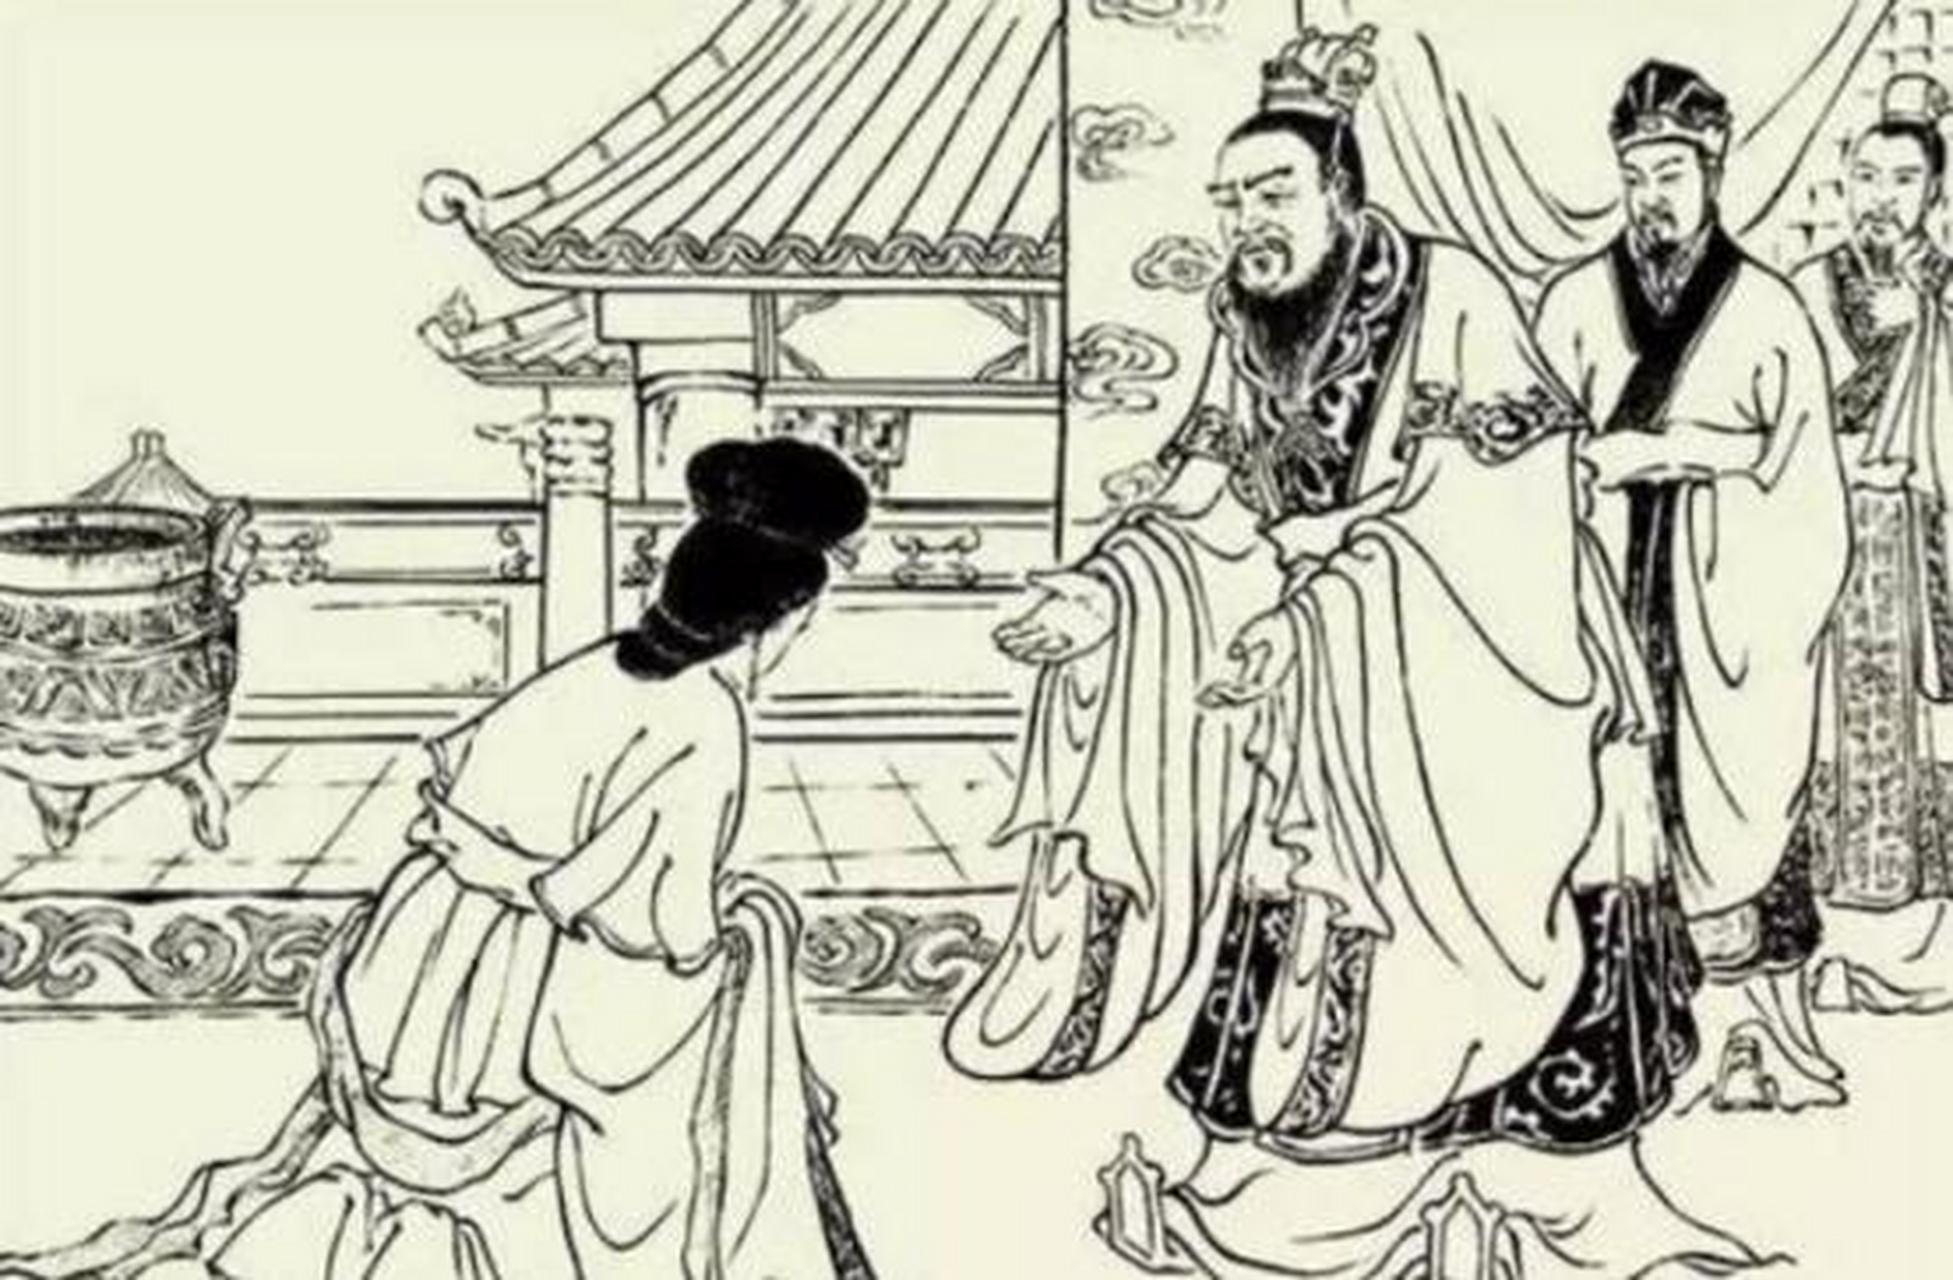 公元207年,才女蔡文姬被逼嫁给小10岁的丈夫,洞房花烛之夜,新郎却对她